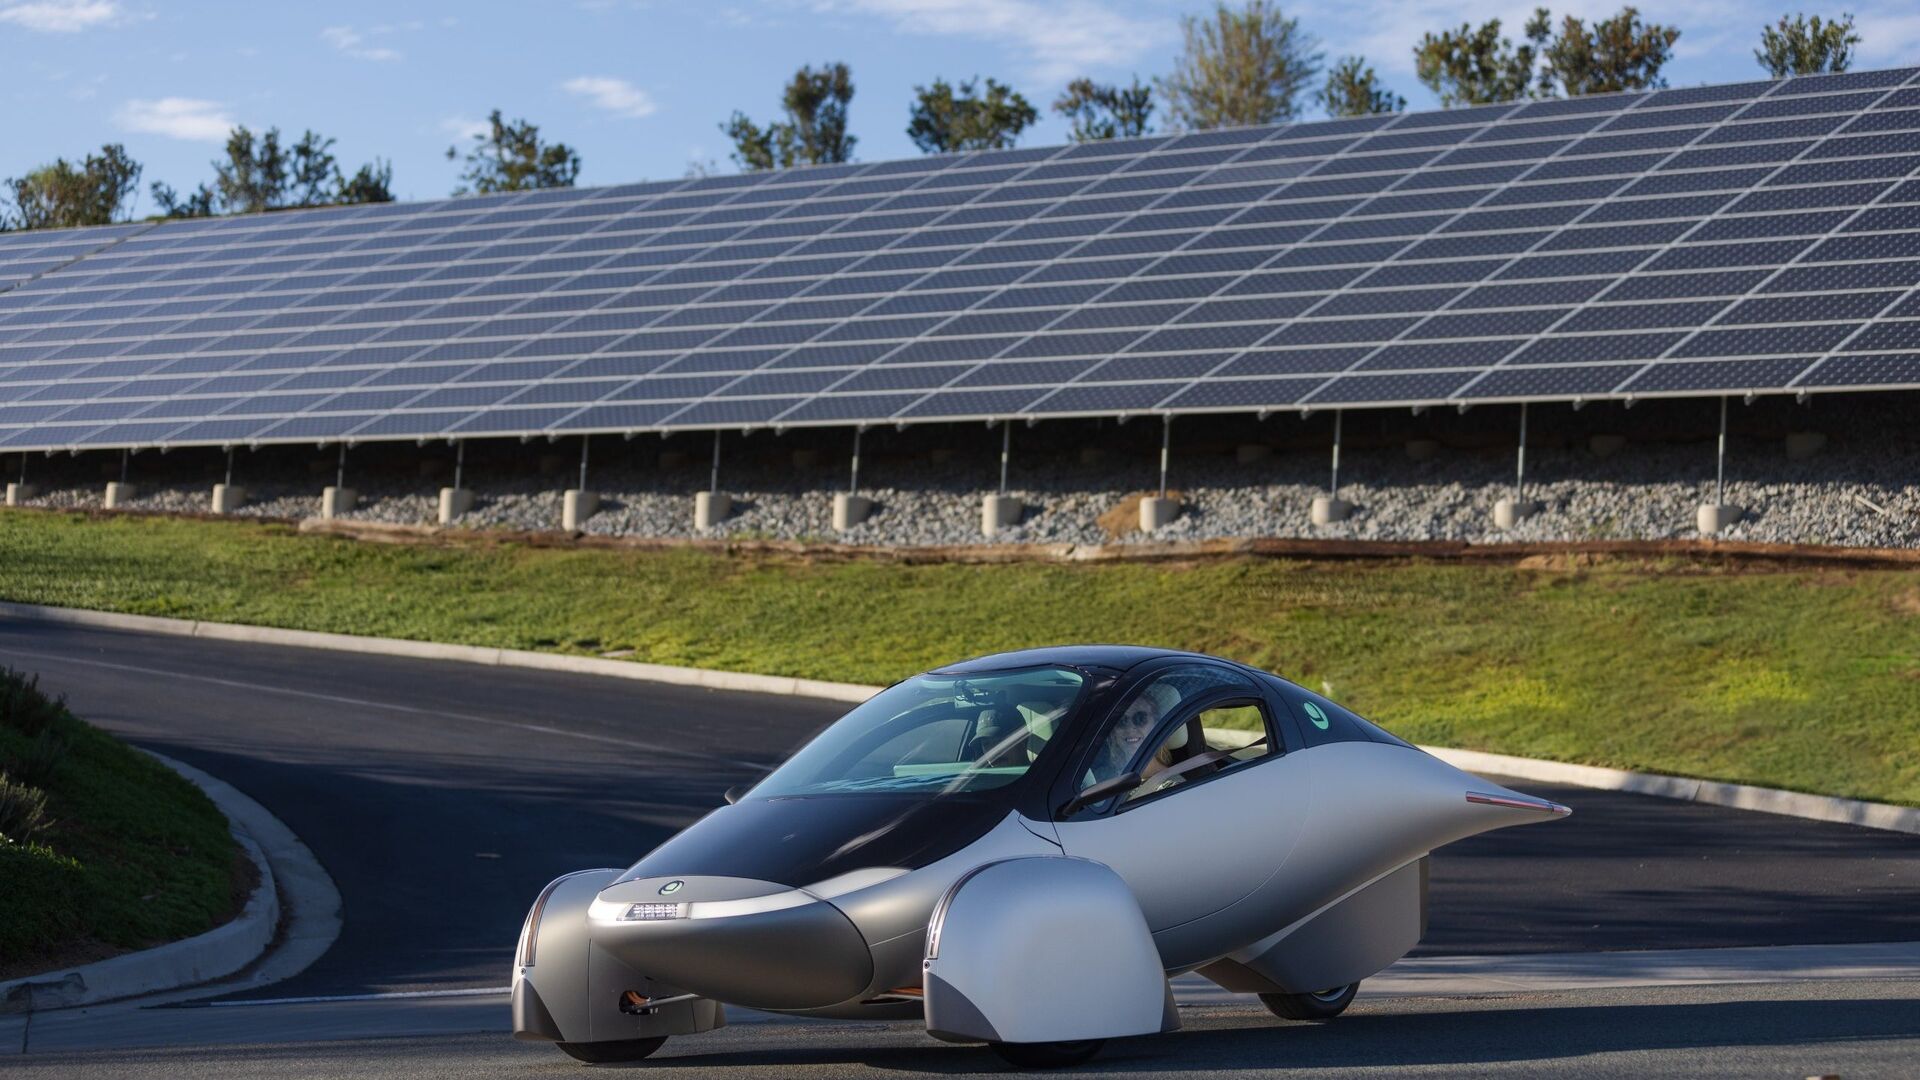 Solárne auto: Aptera Delta je najudržateľnejšie auto na svete s dojazdom 1600 km na batériu a 70 km na solárnu energiu